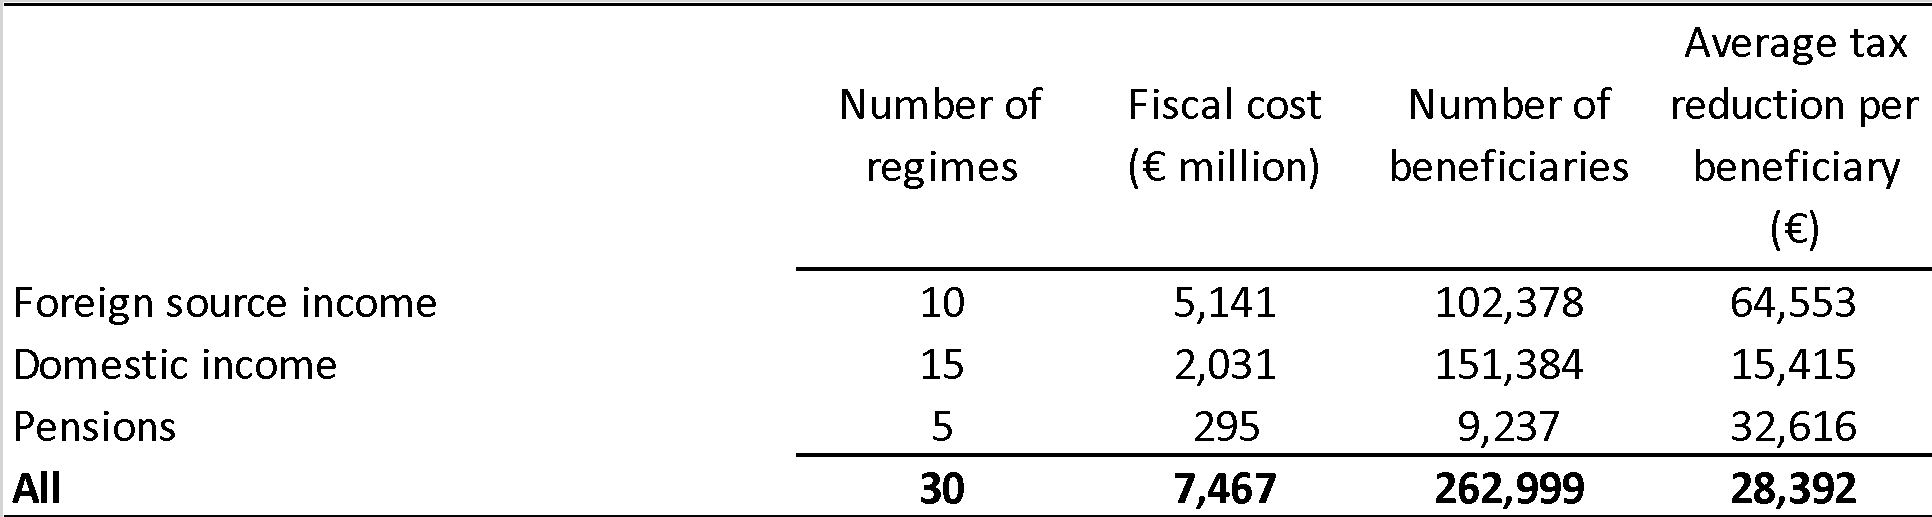 Η αύξηση του αριθμού των ειδικών φορολογικών καθεστώτων στην ΕΕ